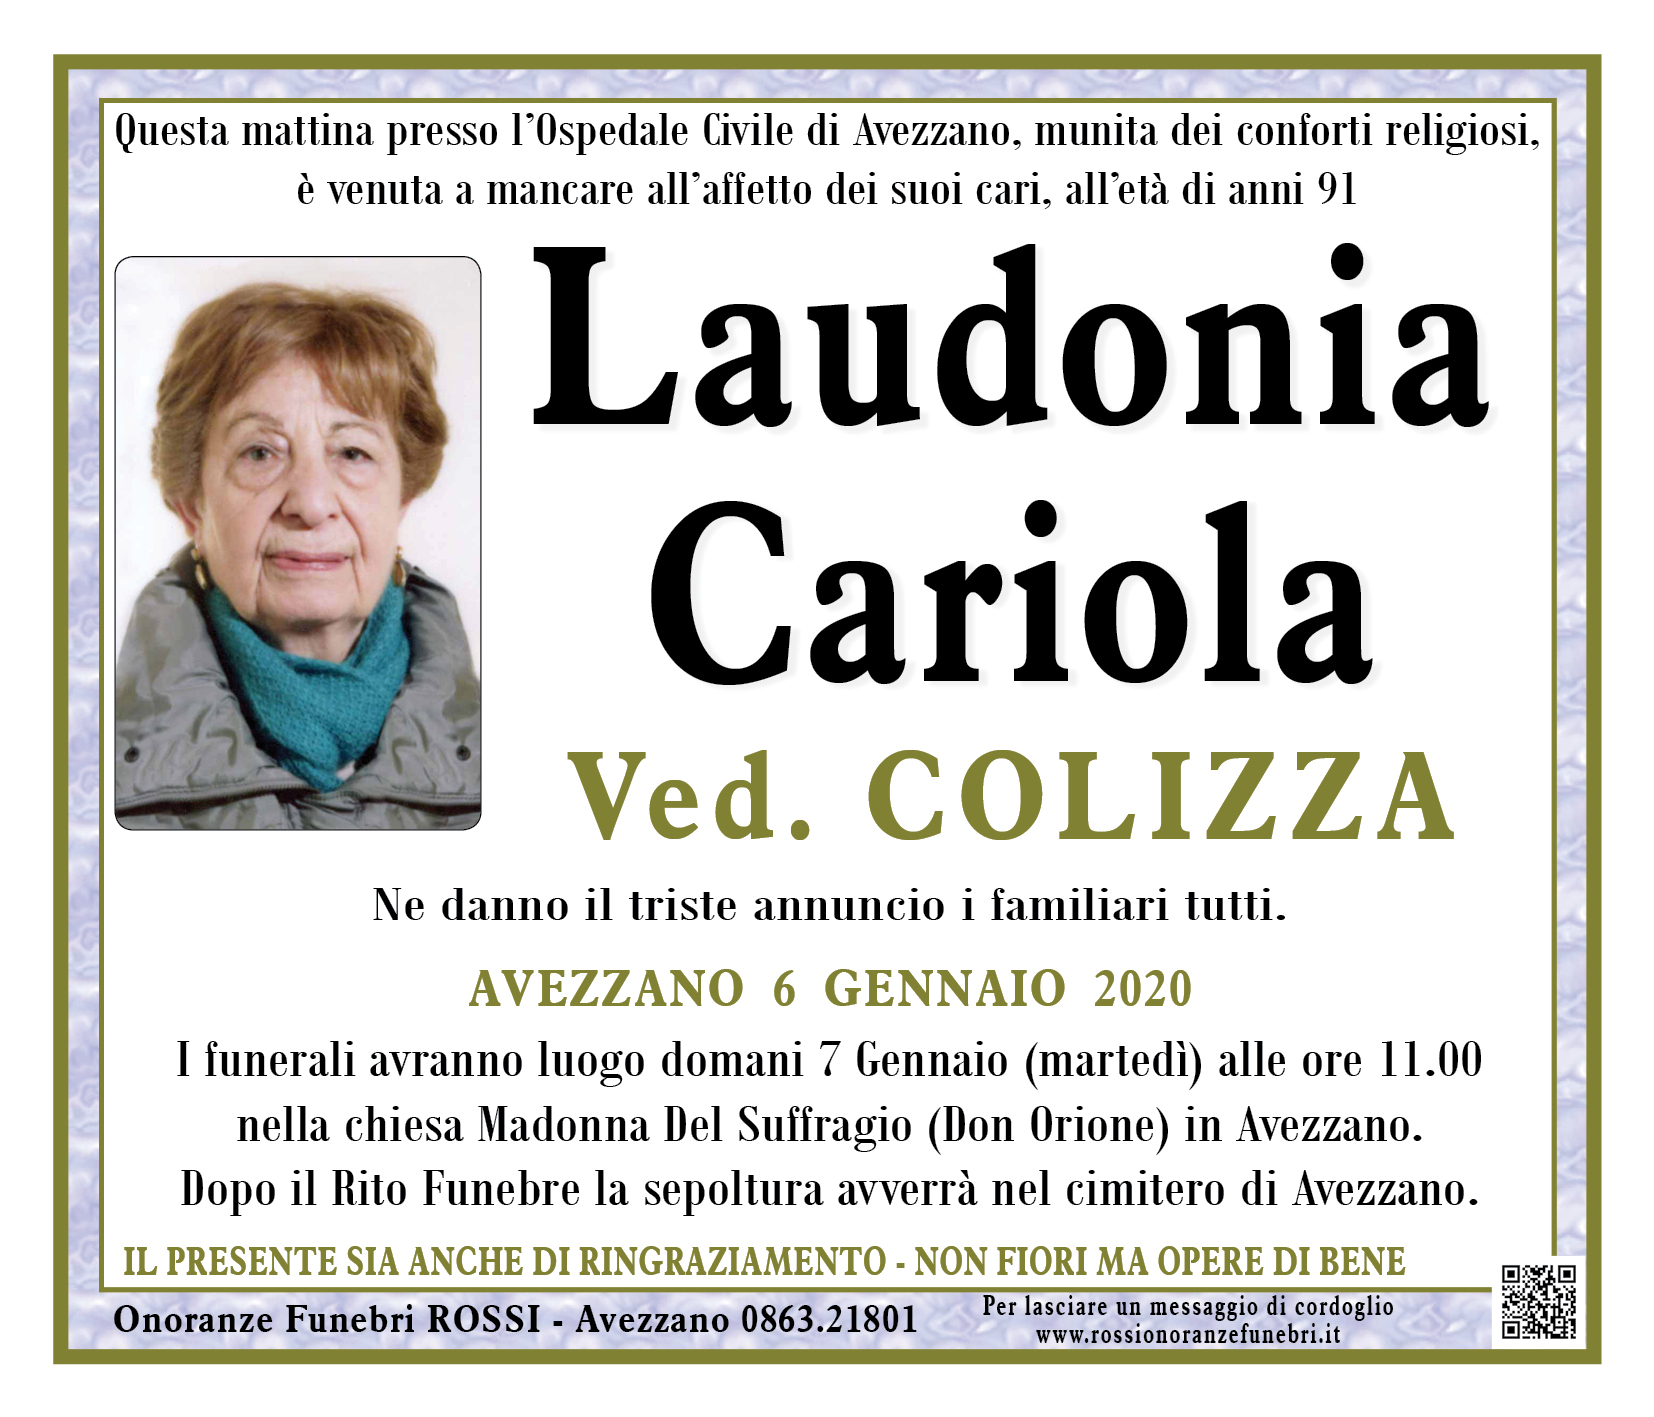 Laudonia Cariola